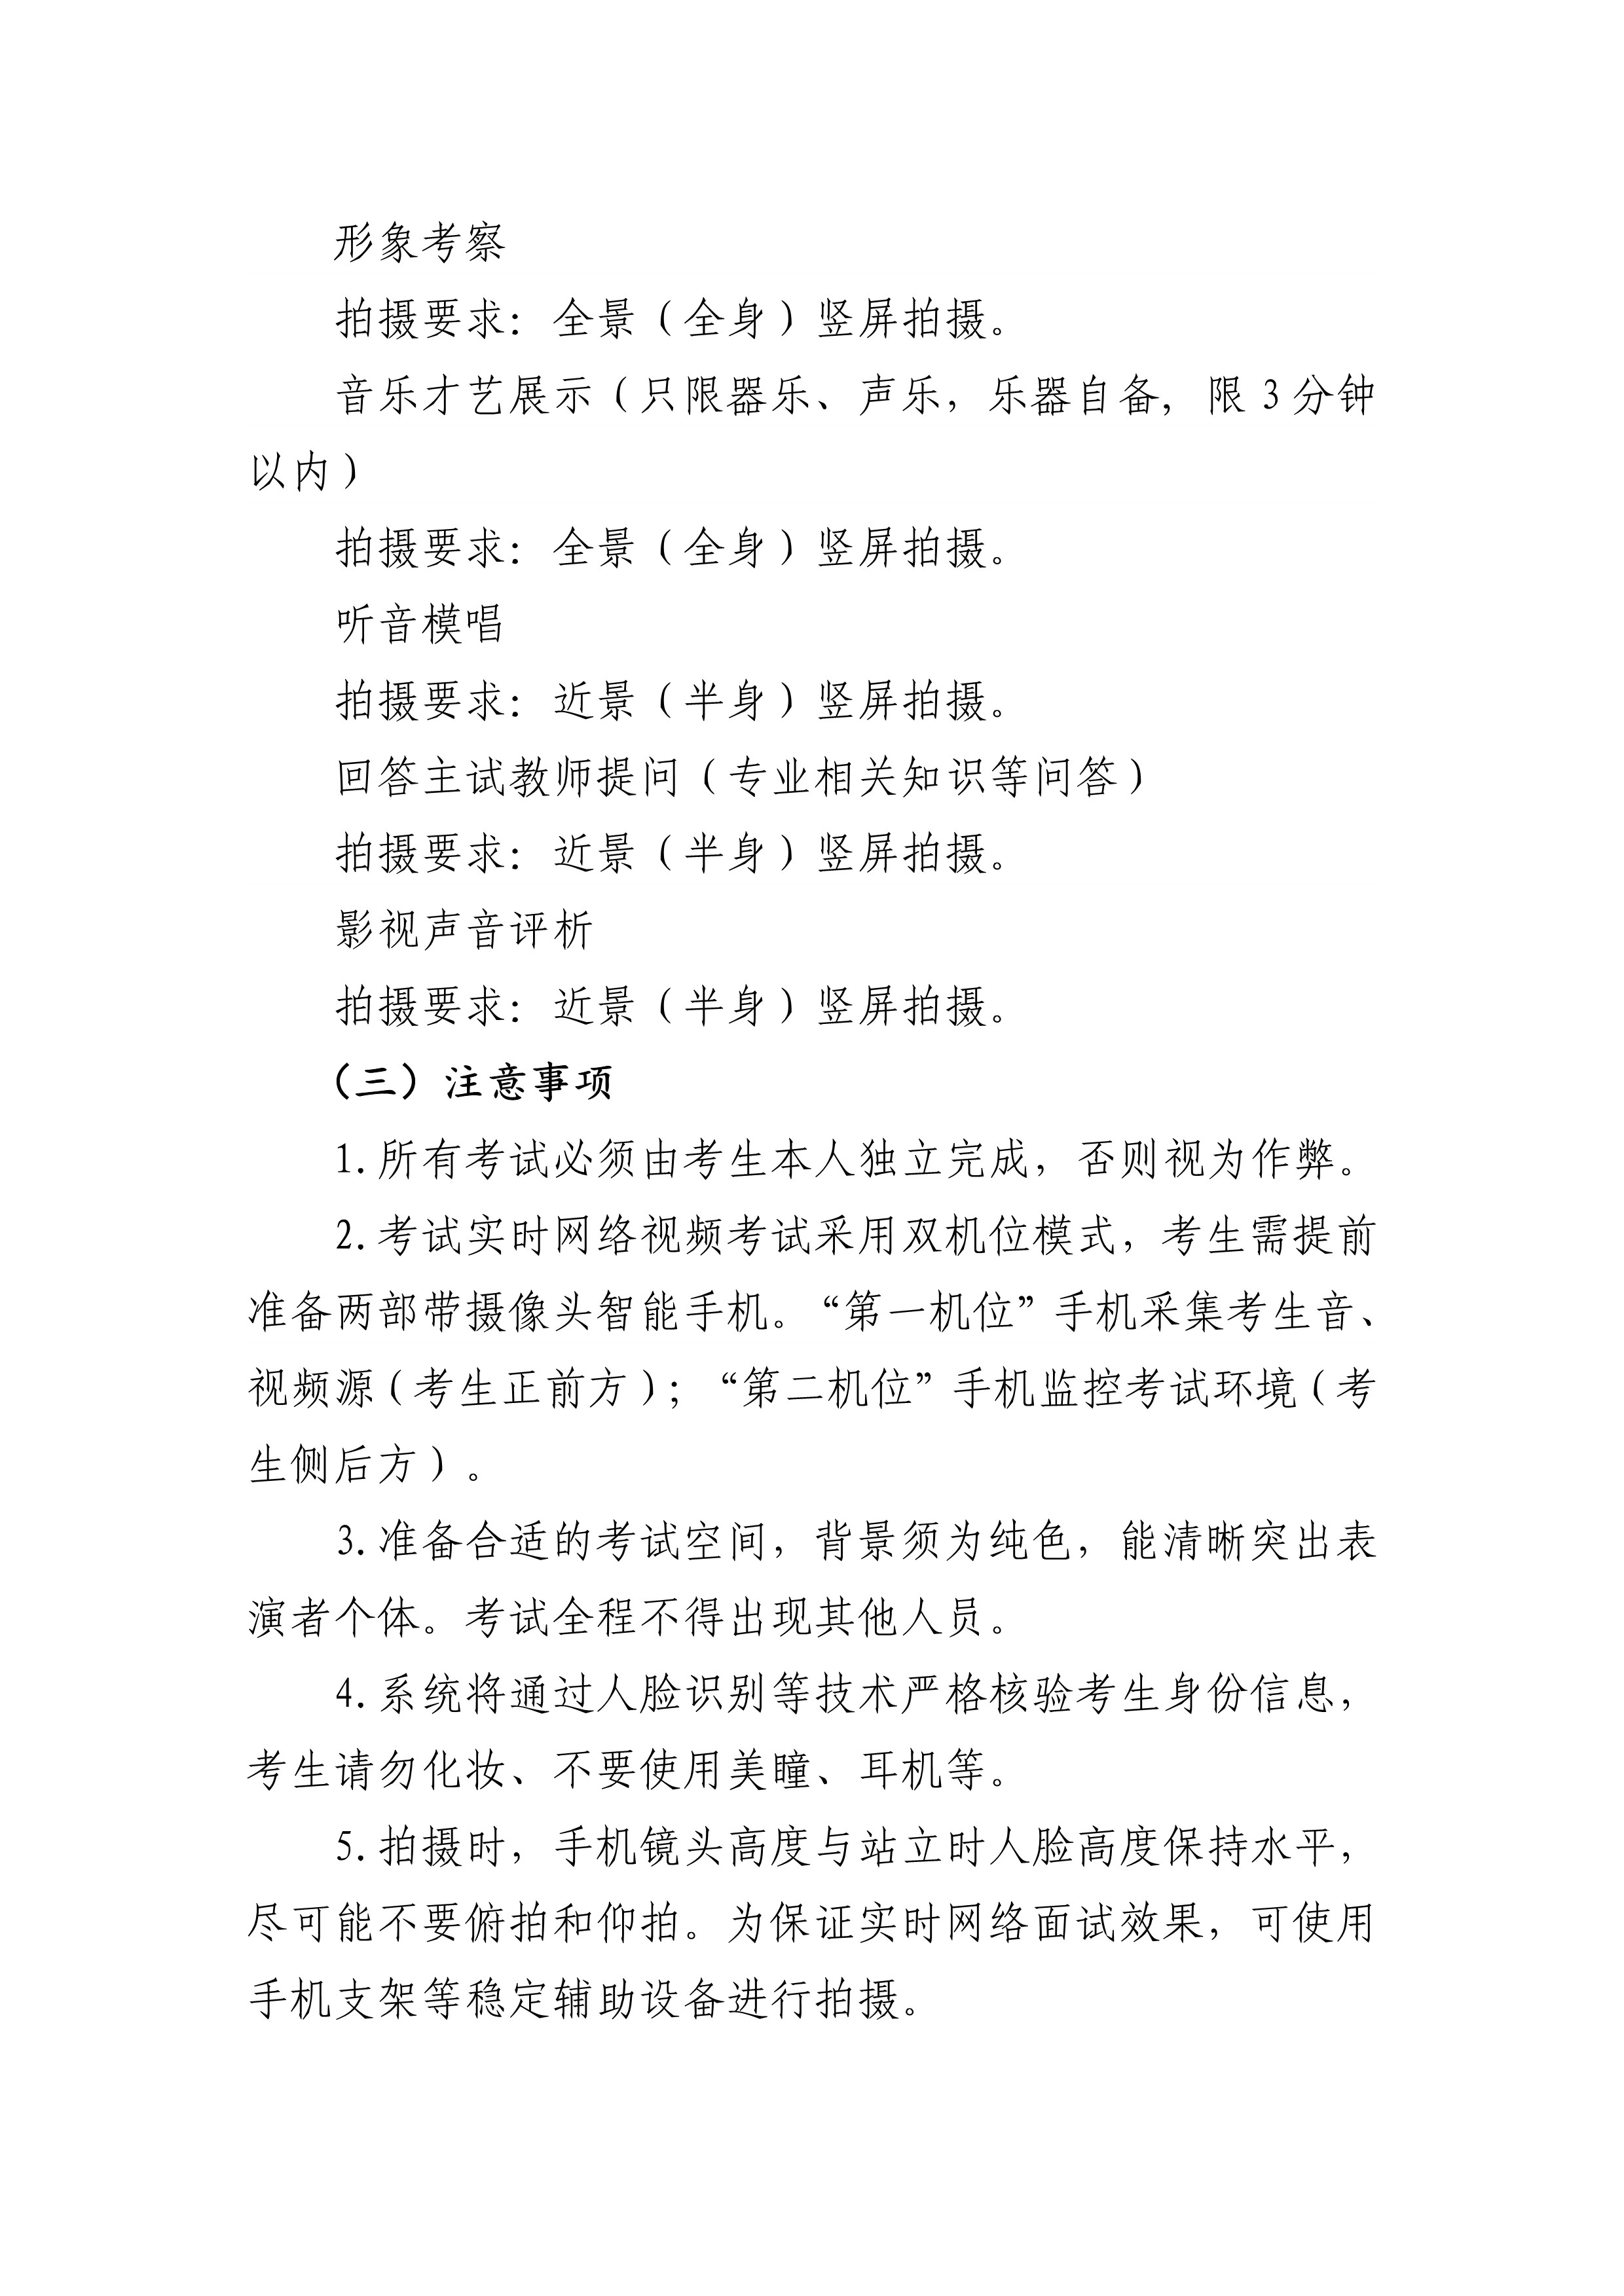 2020年艺术类校考北京考生线上考试流程_5.jpg